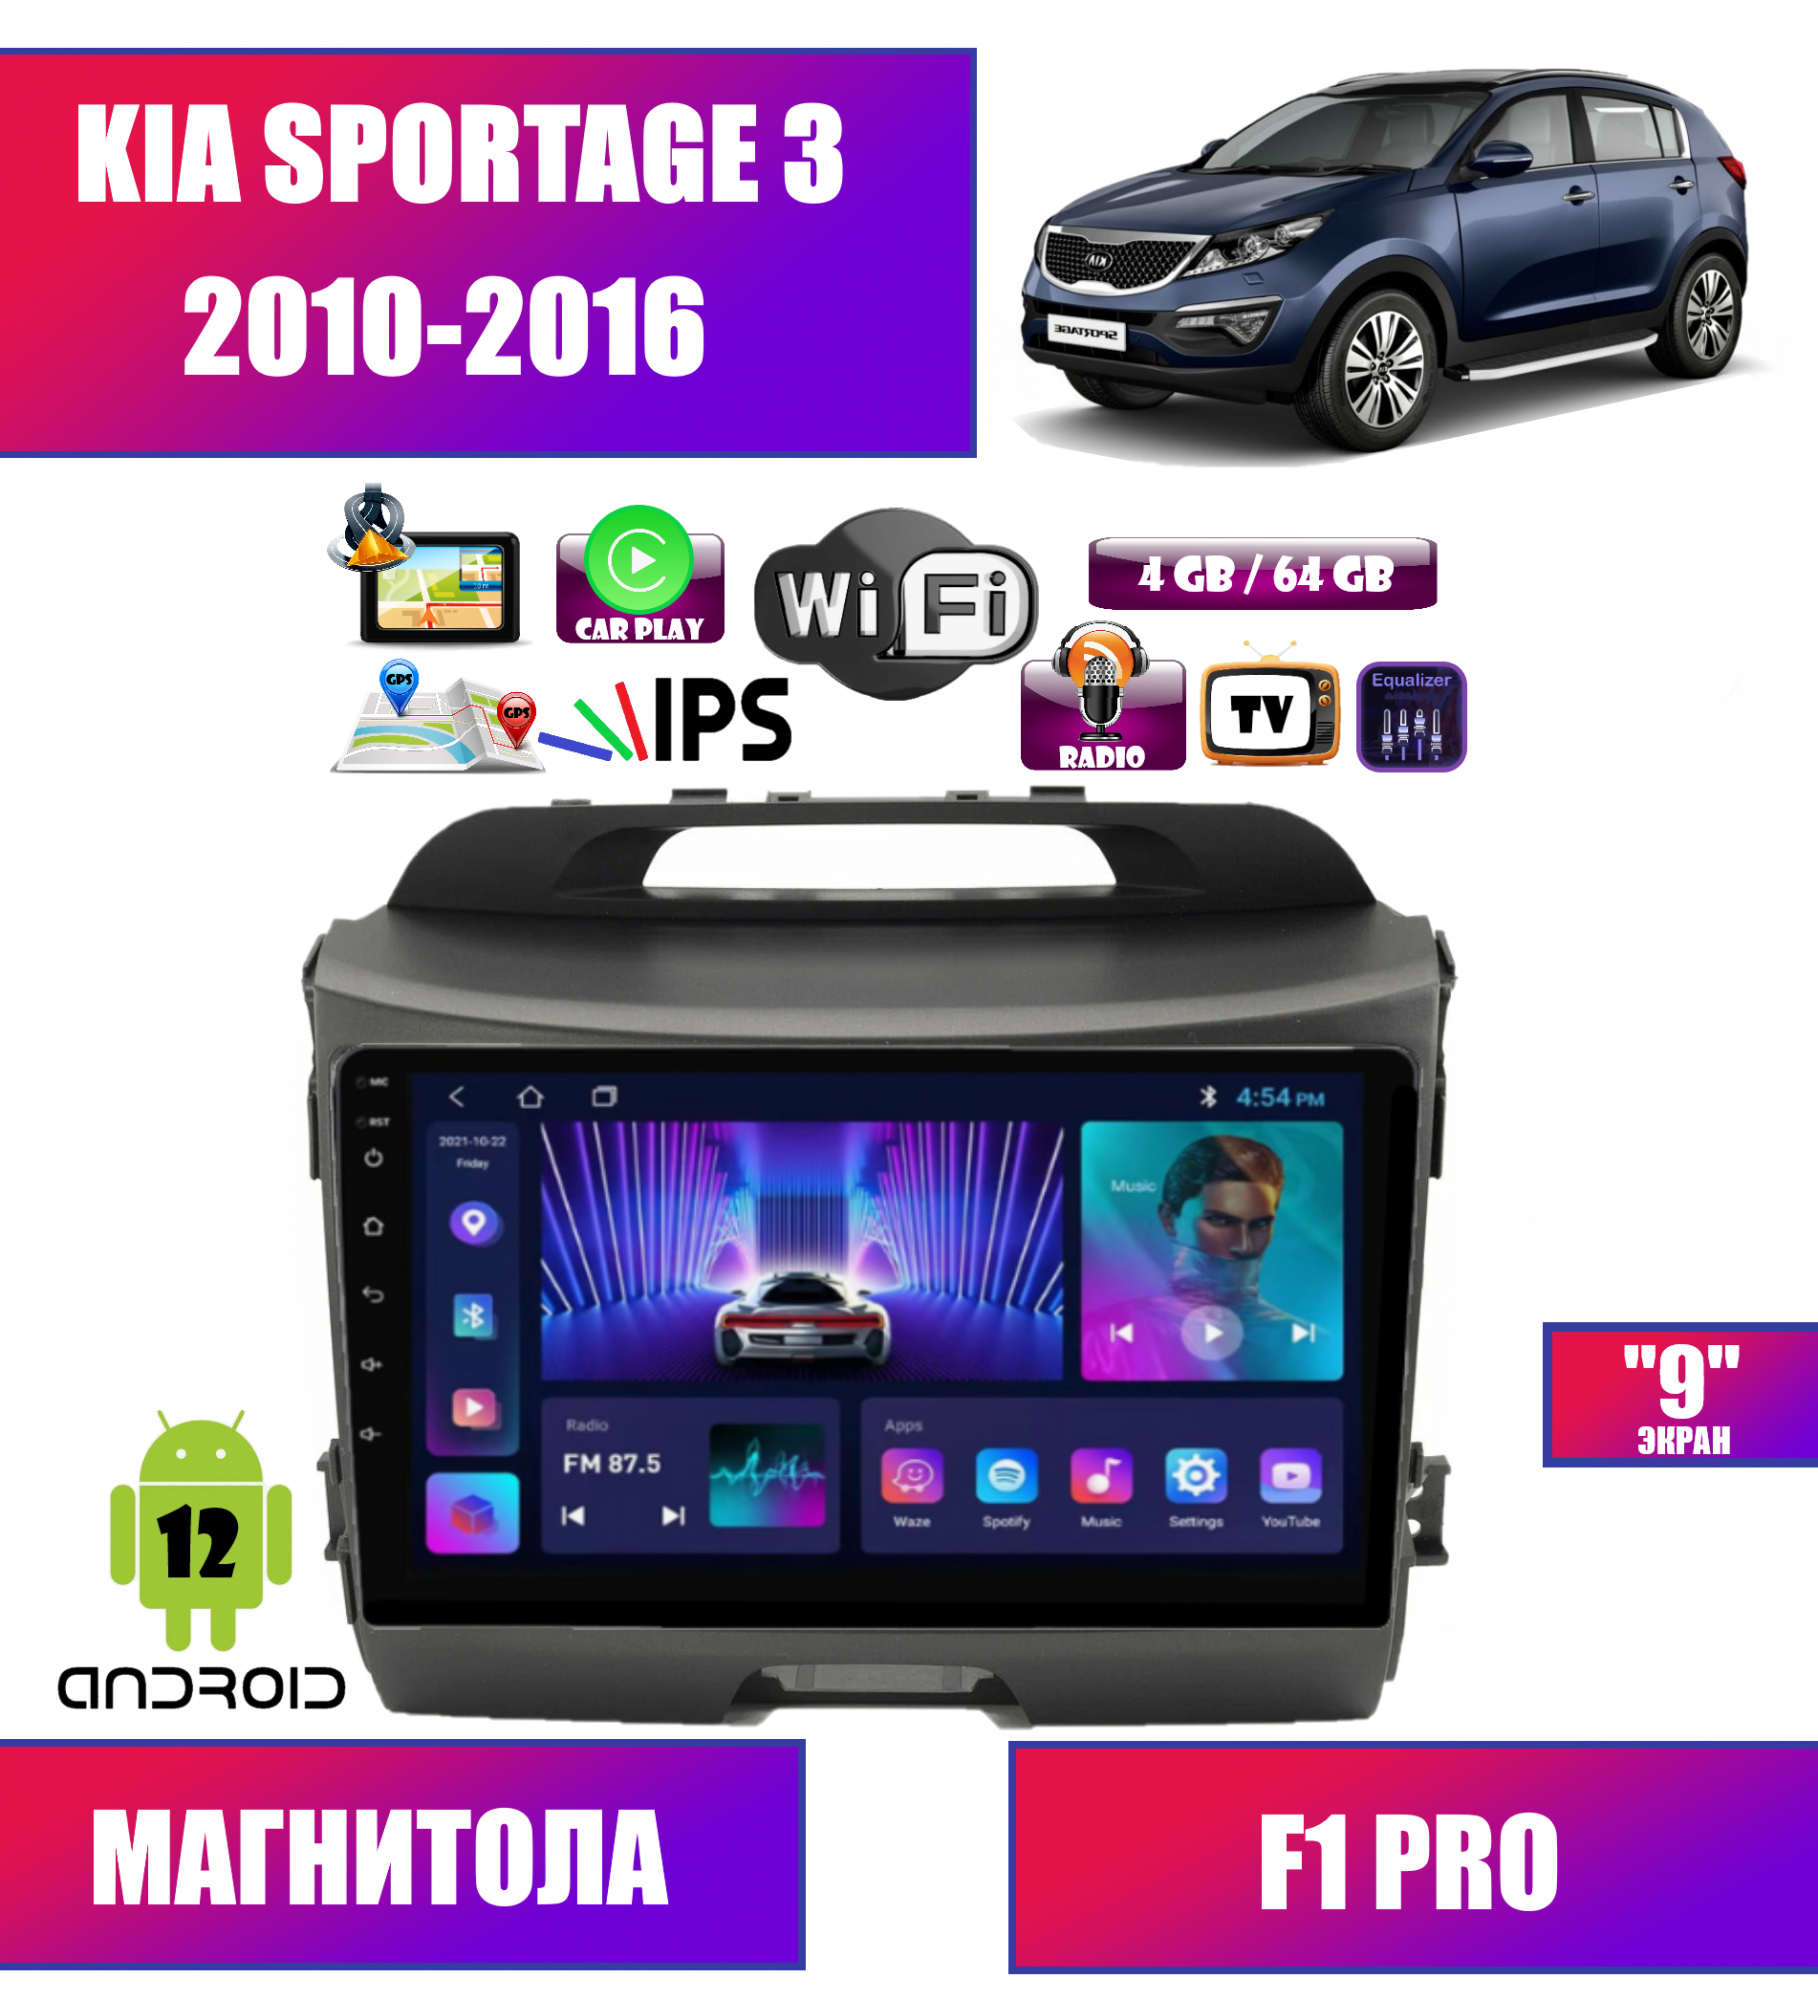 Автомагнитола для KIA Sportage 3 (2010-2016), Android 12, 4/64 Gb, CarPlay, WIFI, GPS, IPS